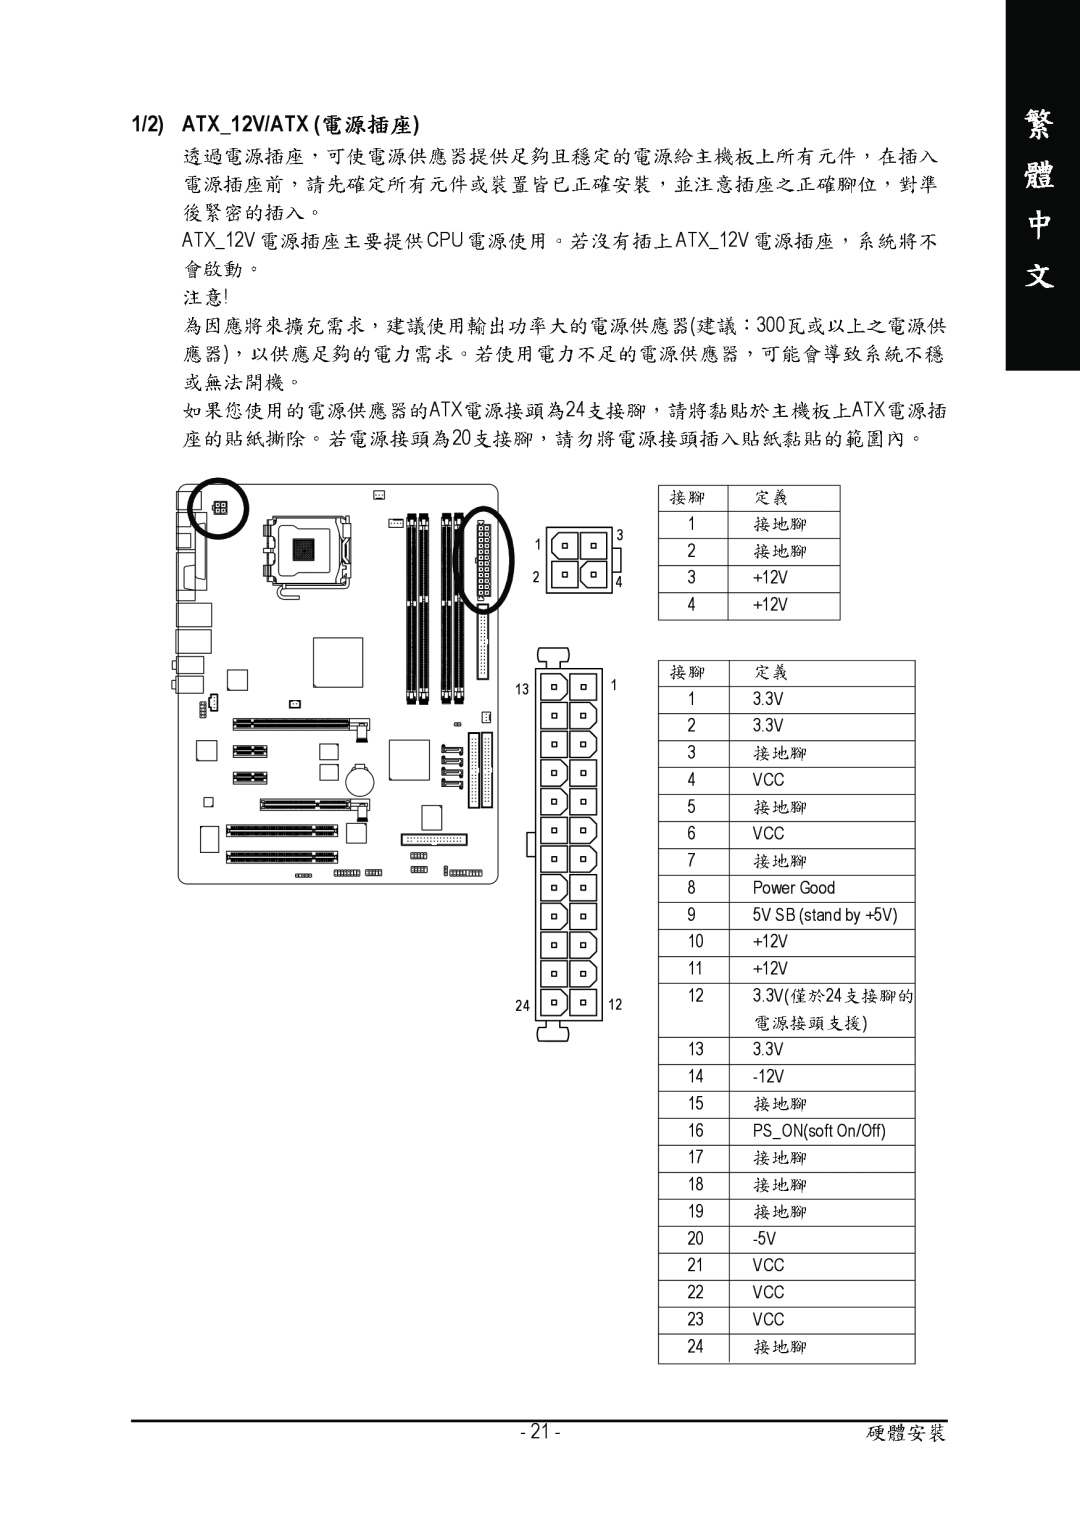 Gigabyte GA-8I915P manual 1/2 ATX12V/ATX, ATX12V CPU ATX12V 